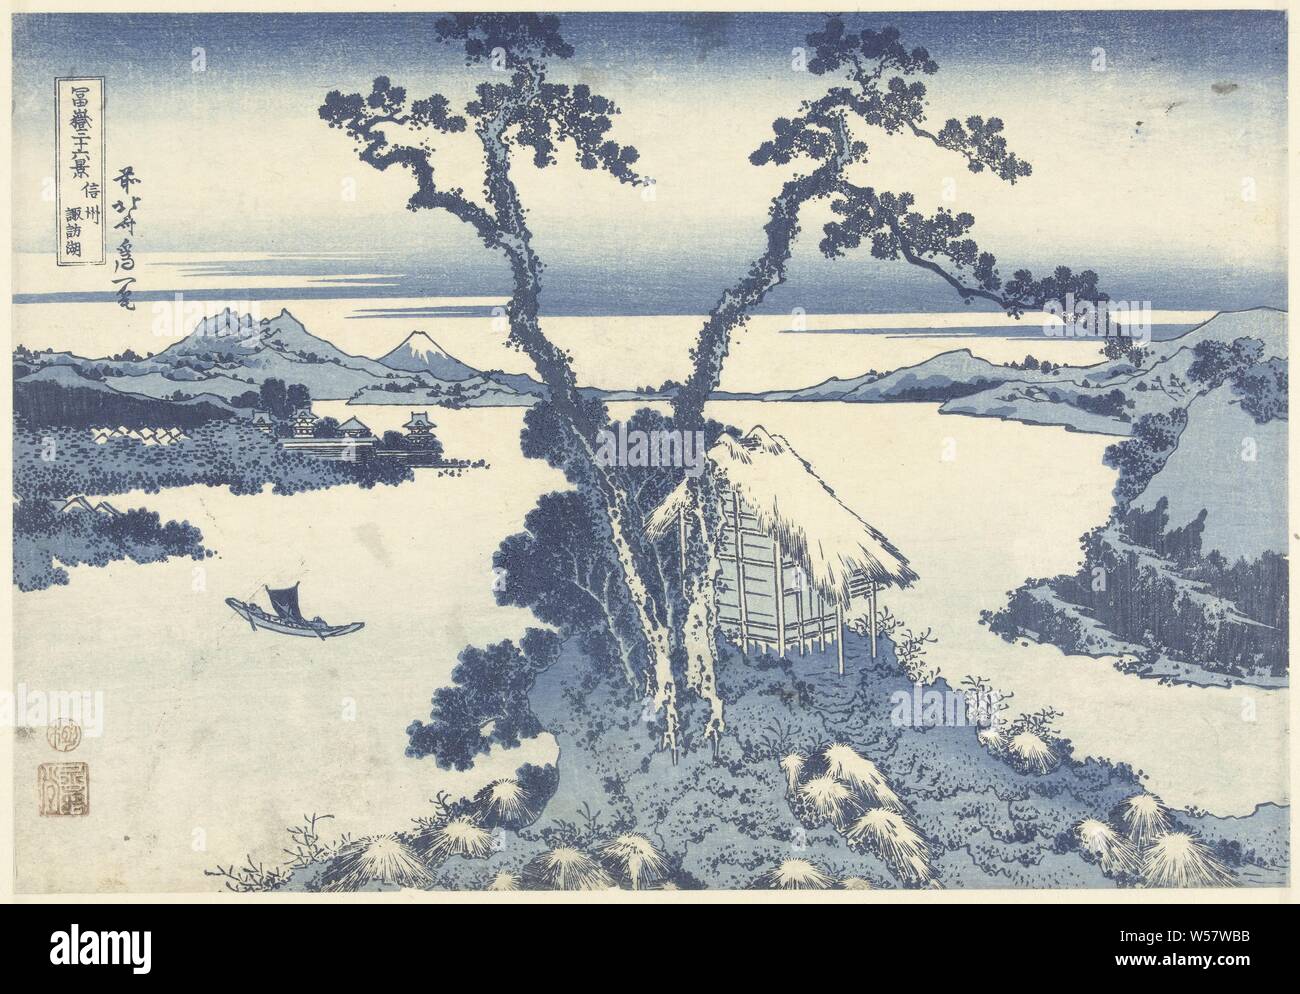 Suwa See in der Provinz Shinano Shinshu Suwako (Titel auf Objekt) 36 Blick auf Mount Fuji (Titel der Serie) Fuji sanjurokkei (Titel der Serie auf Objekt), Blick auf See Suwa mit dem Berg Fuji im Hintergrund und im Vordergrund ein Fels, auf dem ein Heiligtum und zwei Bäume, Fuji, der Berg, Katsushika Hokusai (auf Objekt erwähnt), 1829-1833, Papier, Farbholzschnitt, H 254 mm x B 367 mm Stockfoto